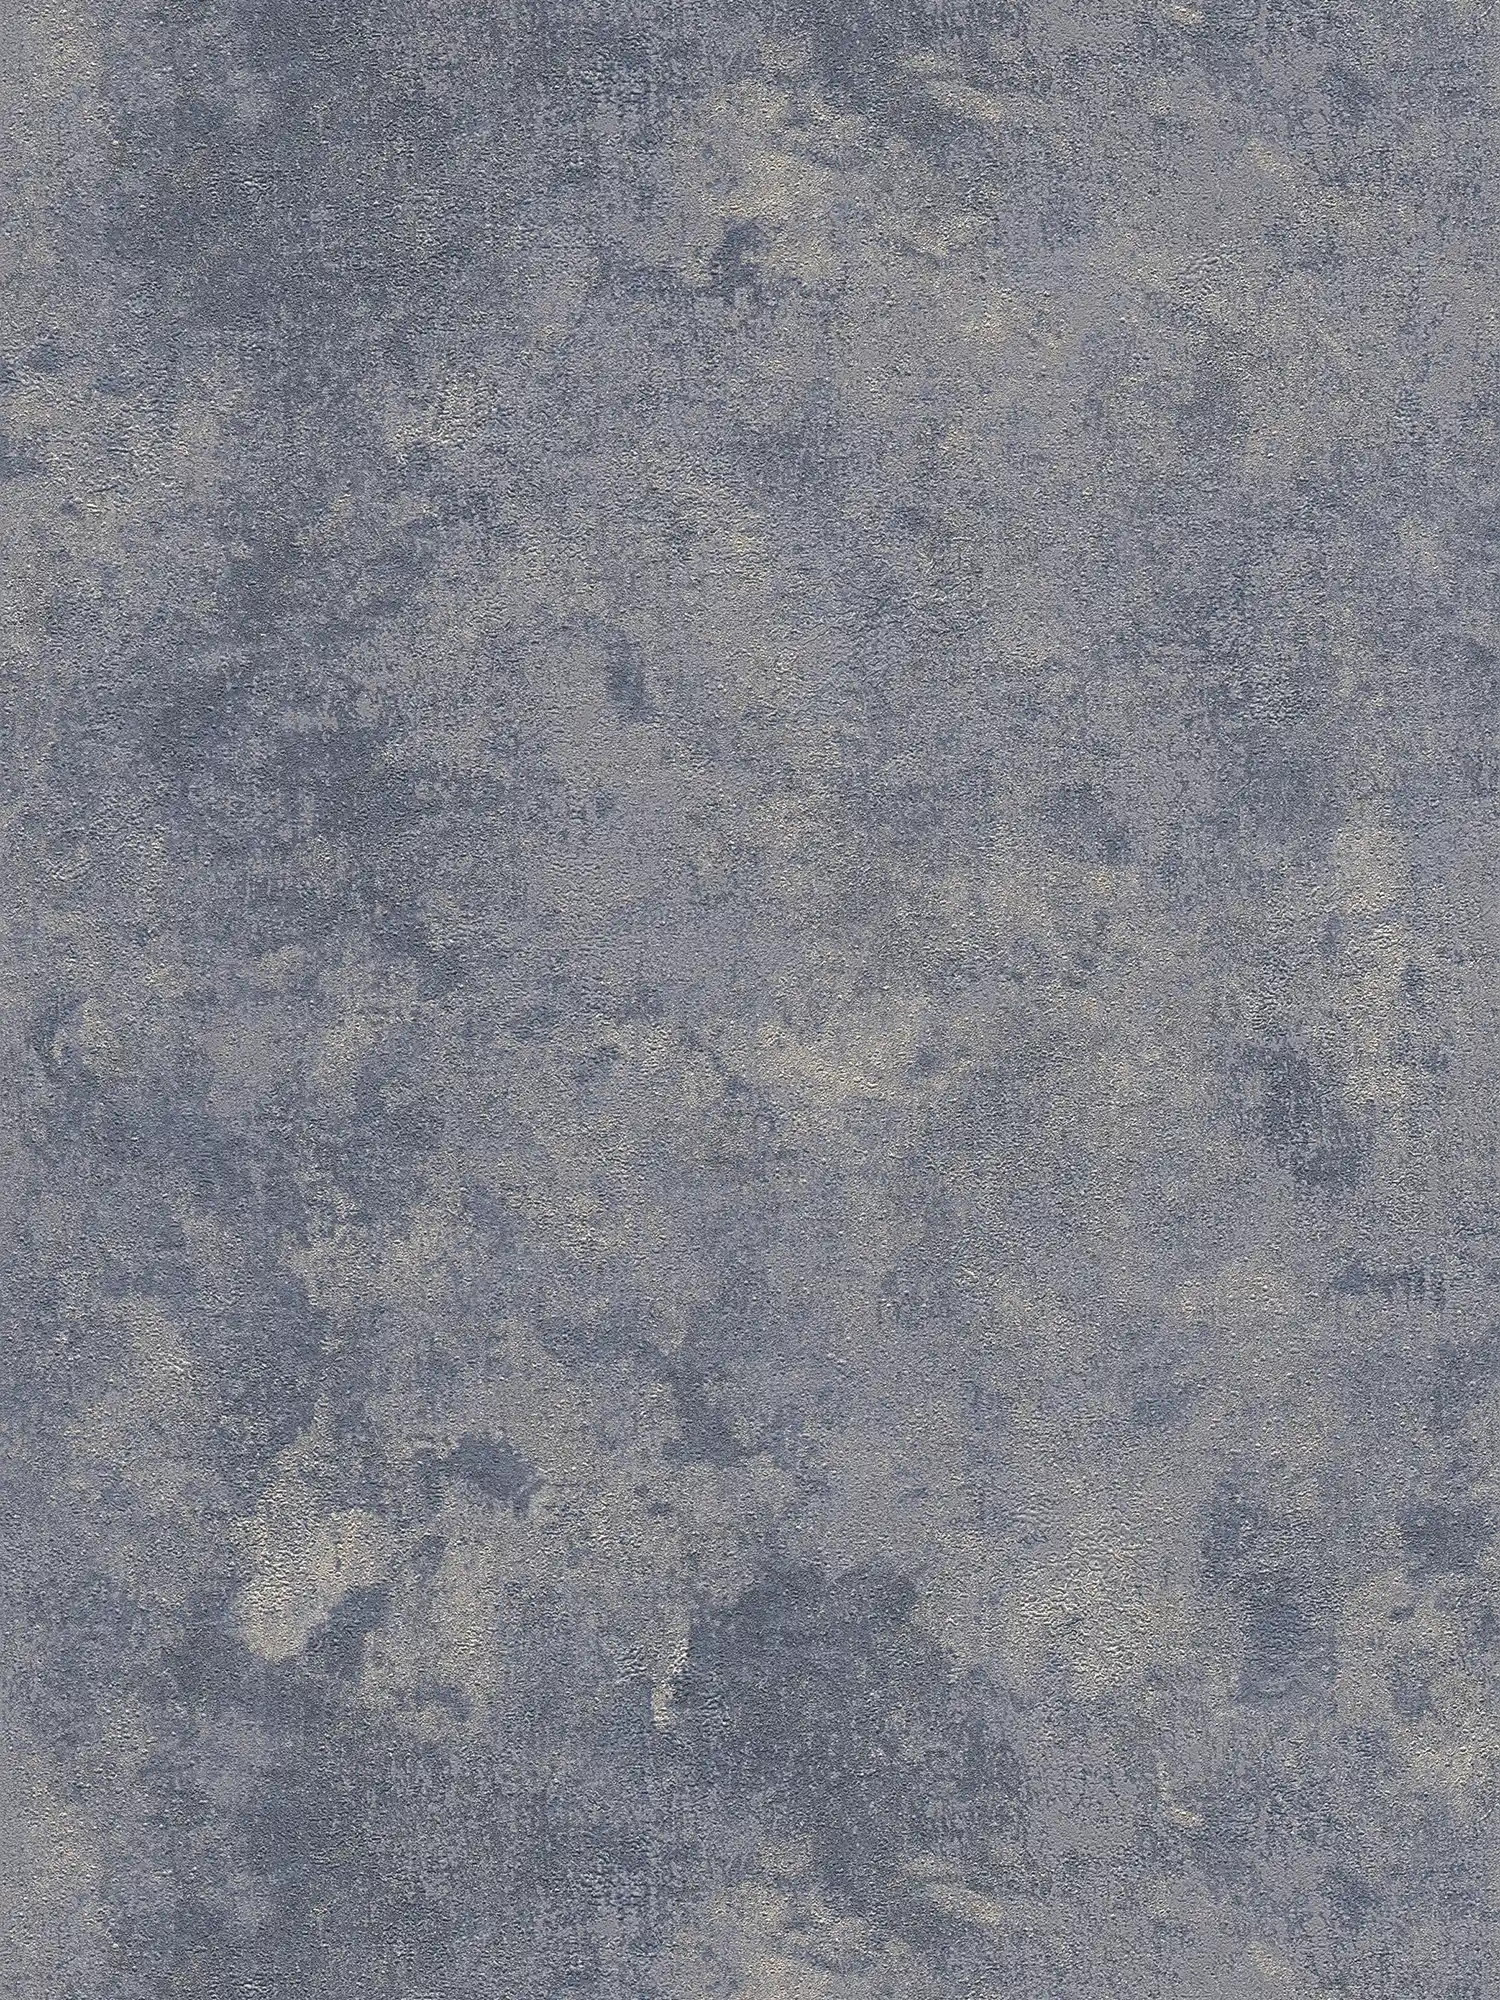 Papier peint texture rugueuse & effet brillant - bleu, argent, gris
